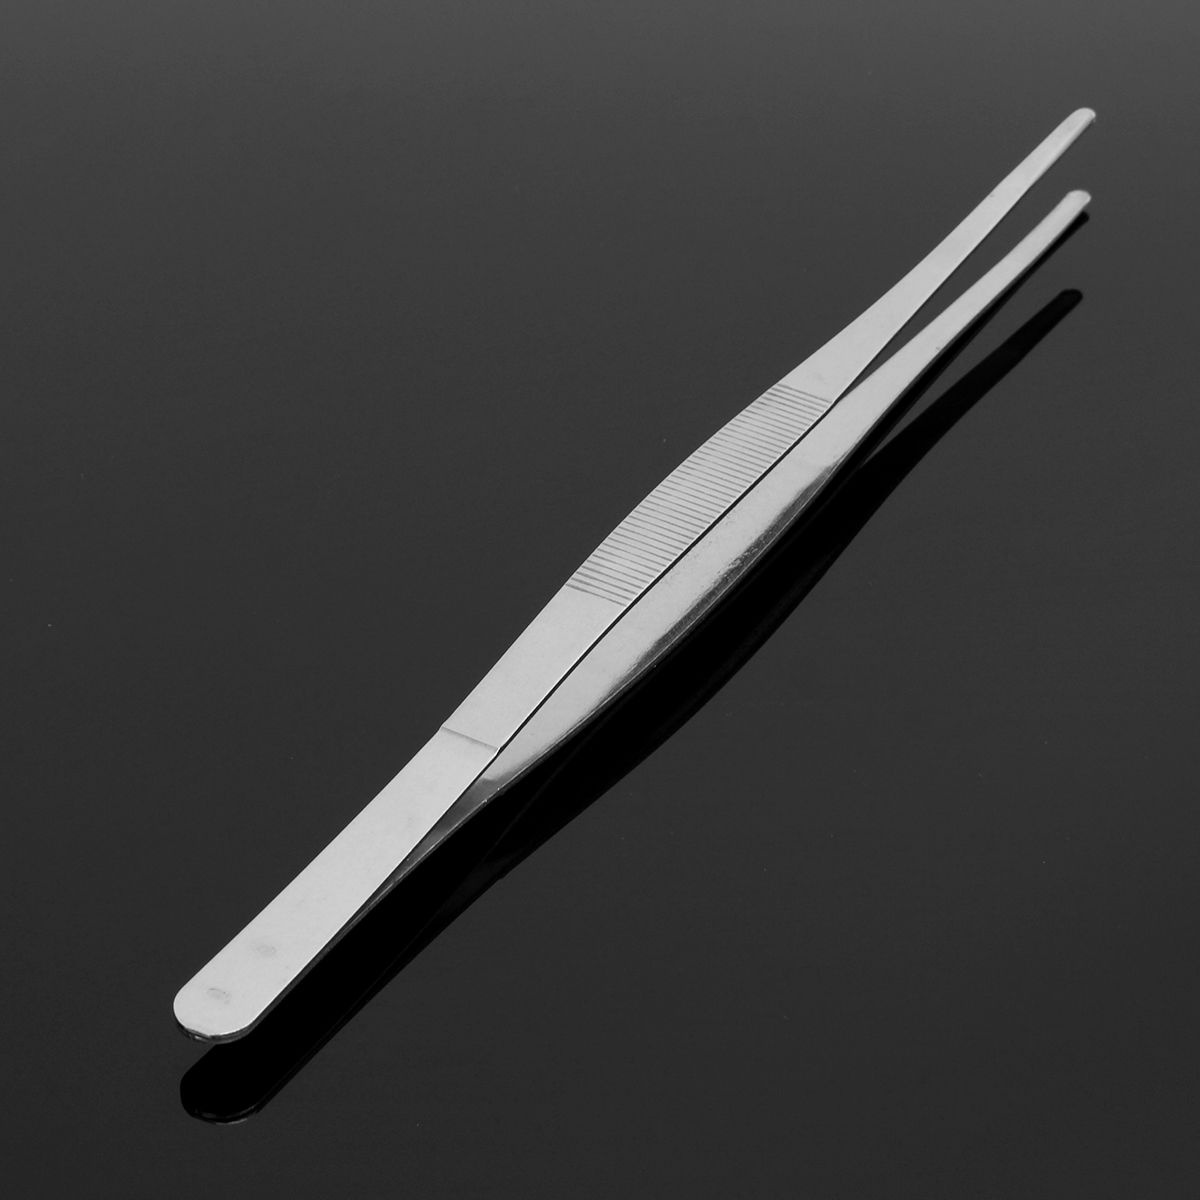 30cm-Stainless-Steel-Silver-Long-Tongs-Straight-Tweezers-Tool-1110841